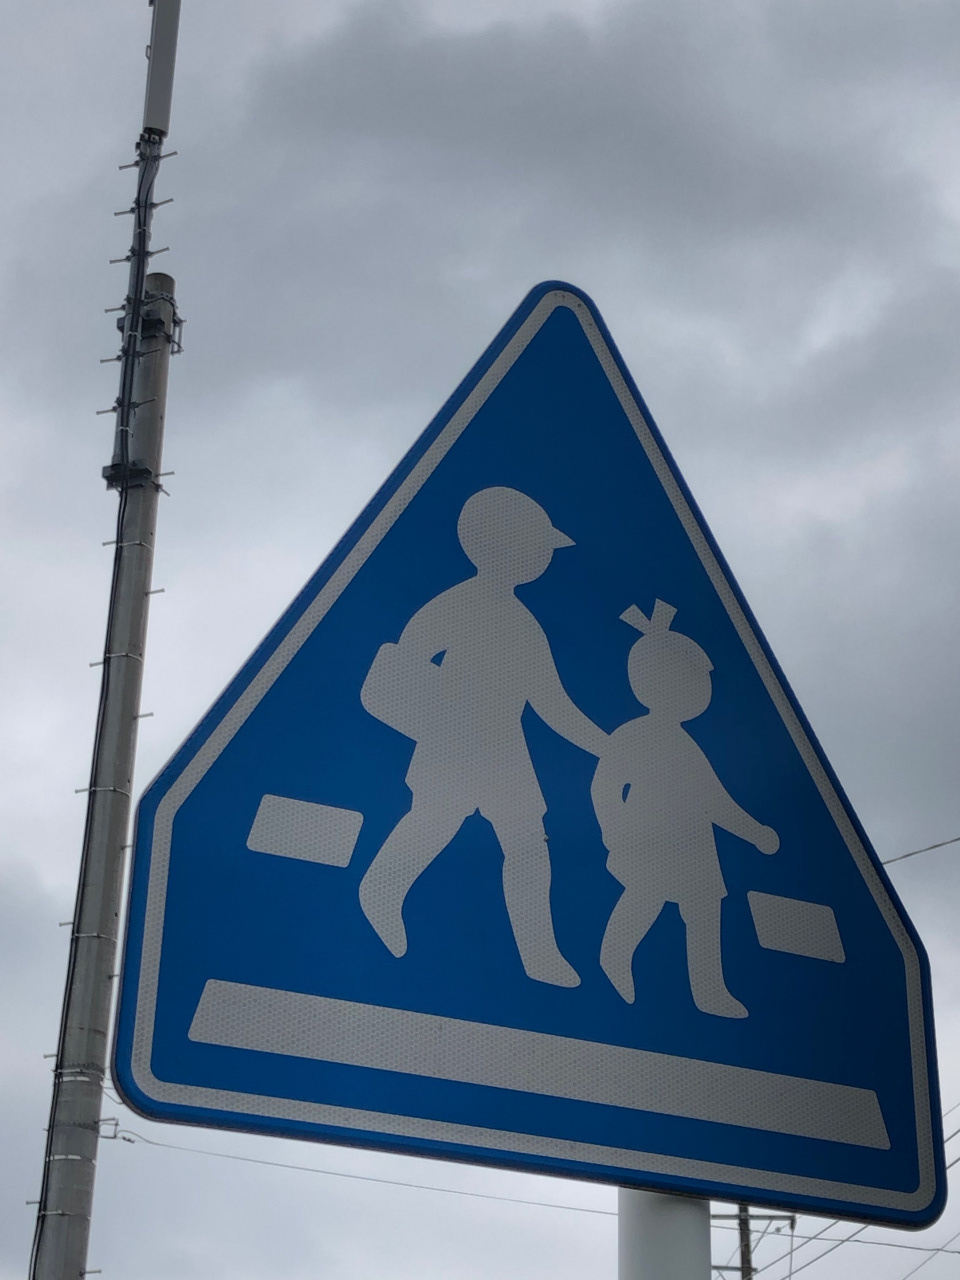 横断歩道に気付かないドライバー対策 標識認識機能の活用を提案したい 週刊クルマのミライ Clicccar Com